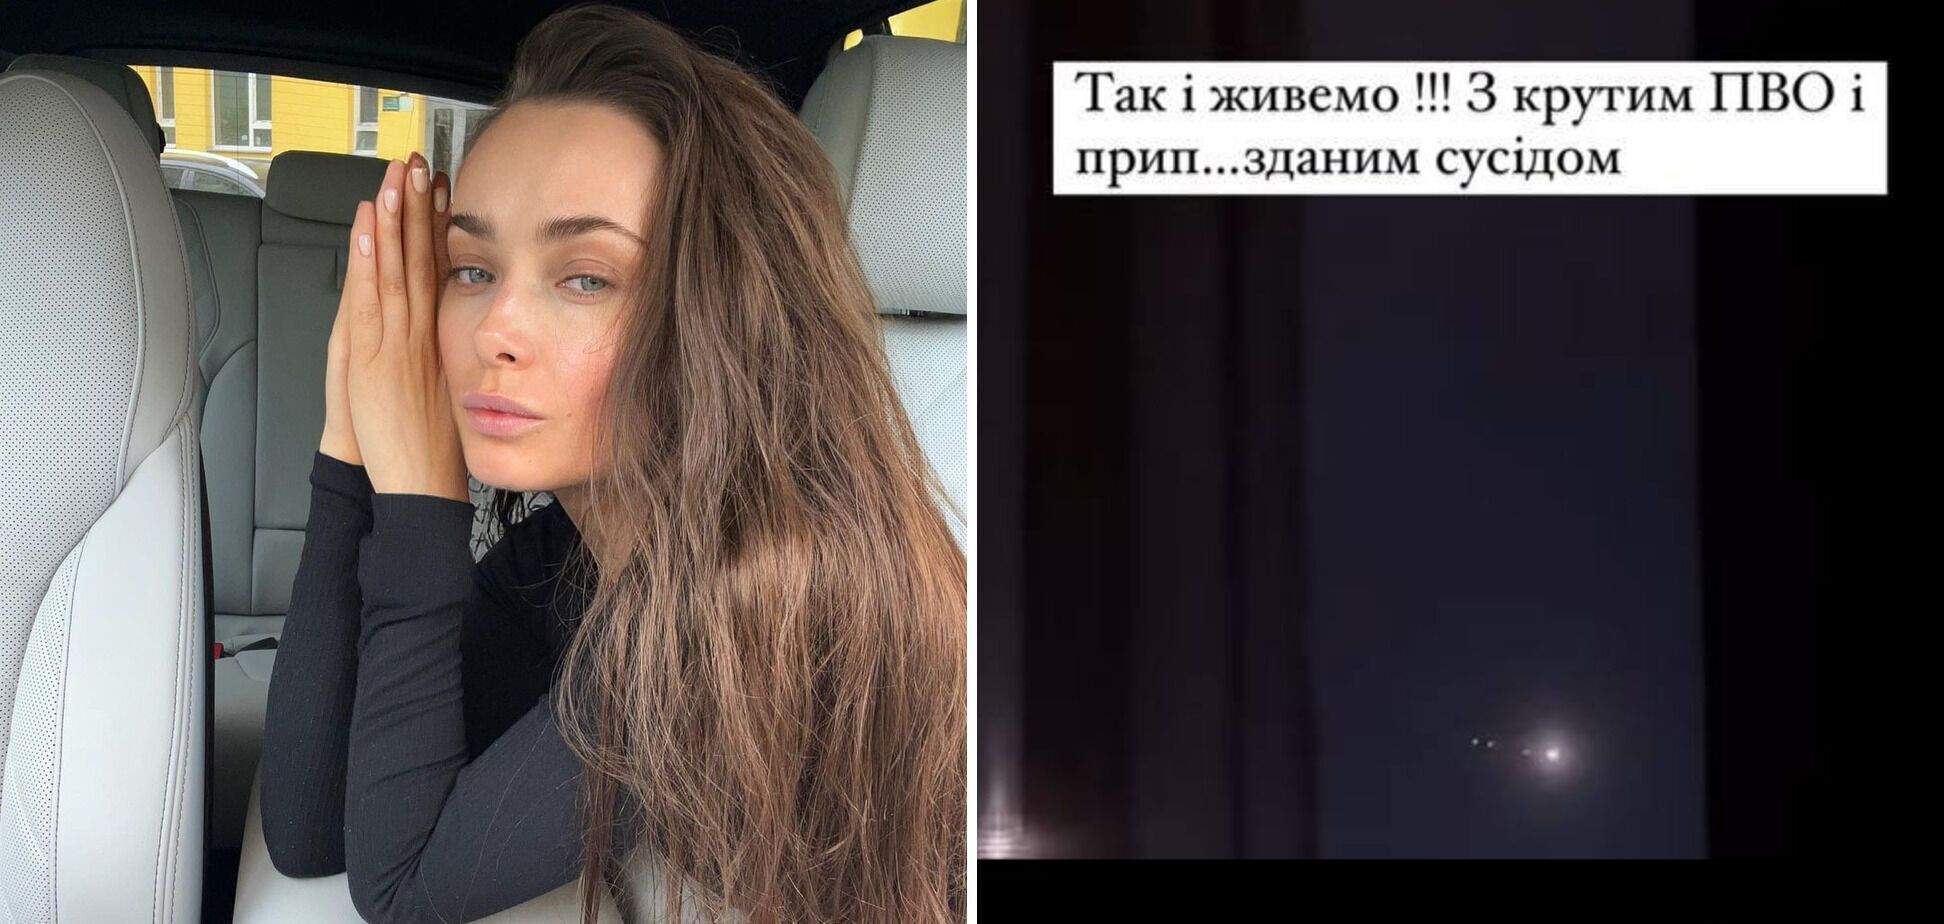 "За неї заплатили": співачка Воронова, яка зняла ППО, зробила гучну заяву про Мішину, яка оскандалилася аналогічним вчинком